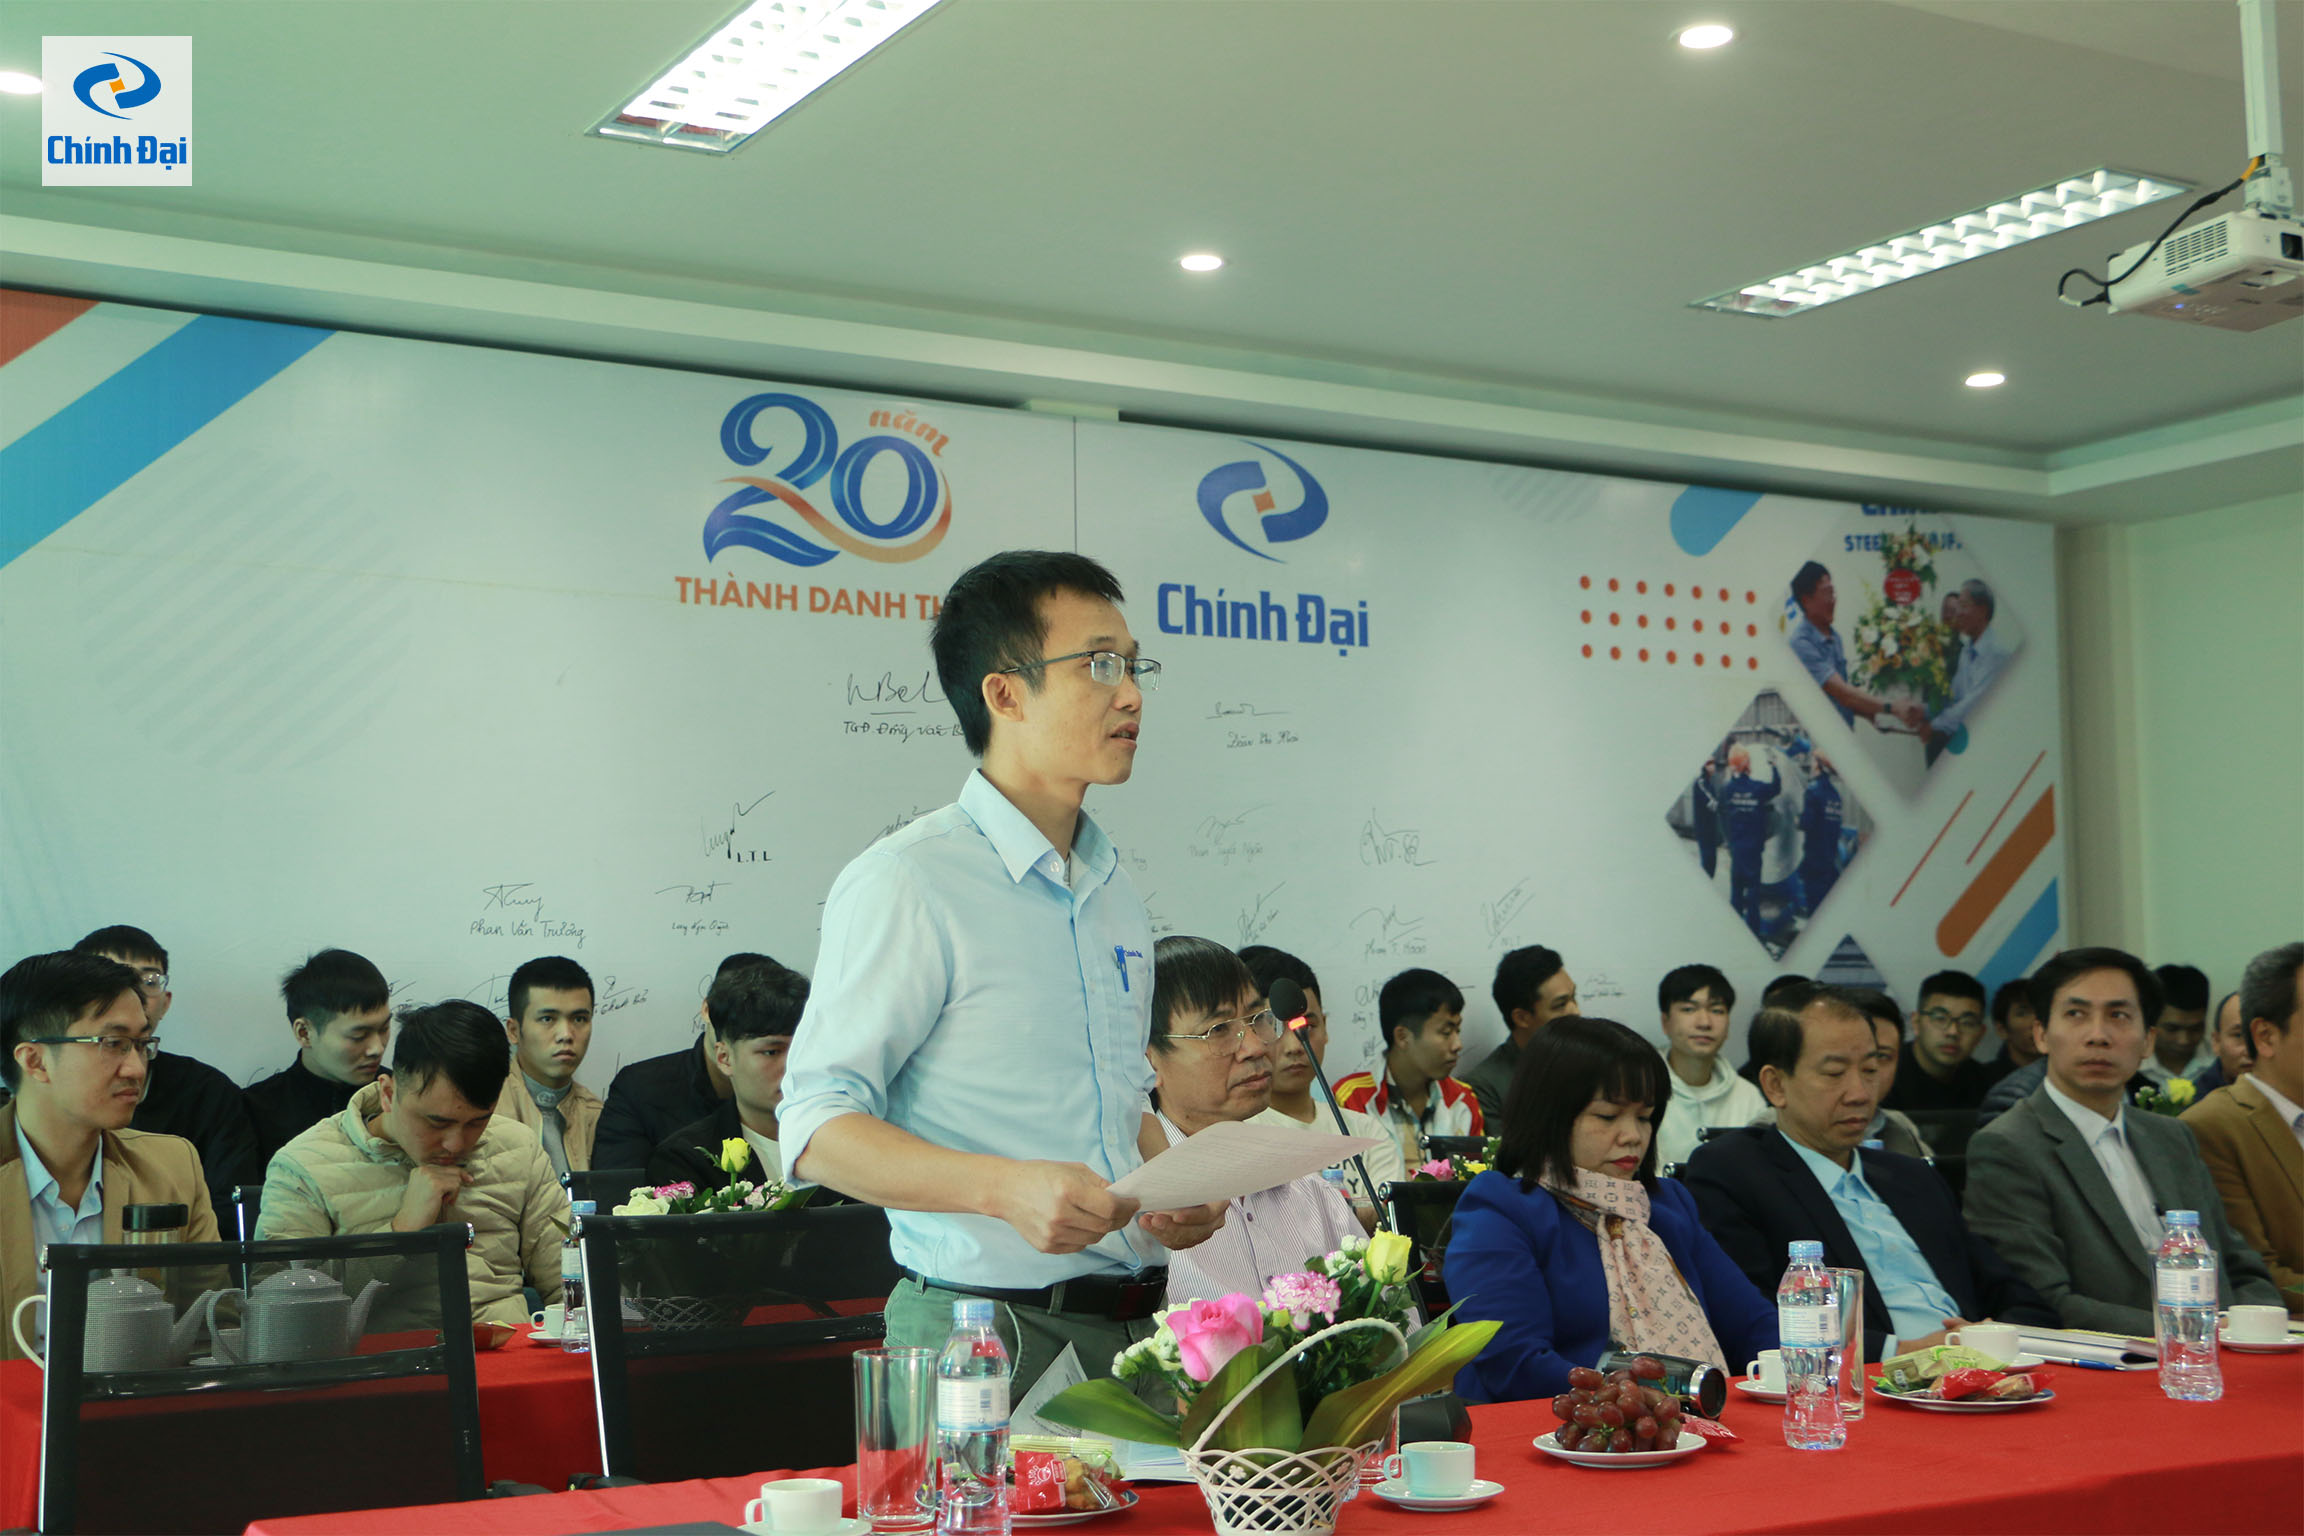 Ông Trần Văn Chi - Giám đốc nhà máy, đánh giá cao ý thức lao động và tinh thần ham học hỏi của các bạn sinh viên thực tập